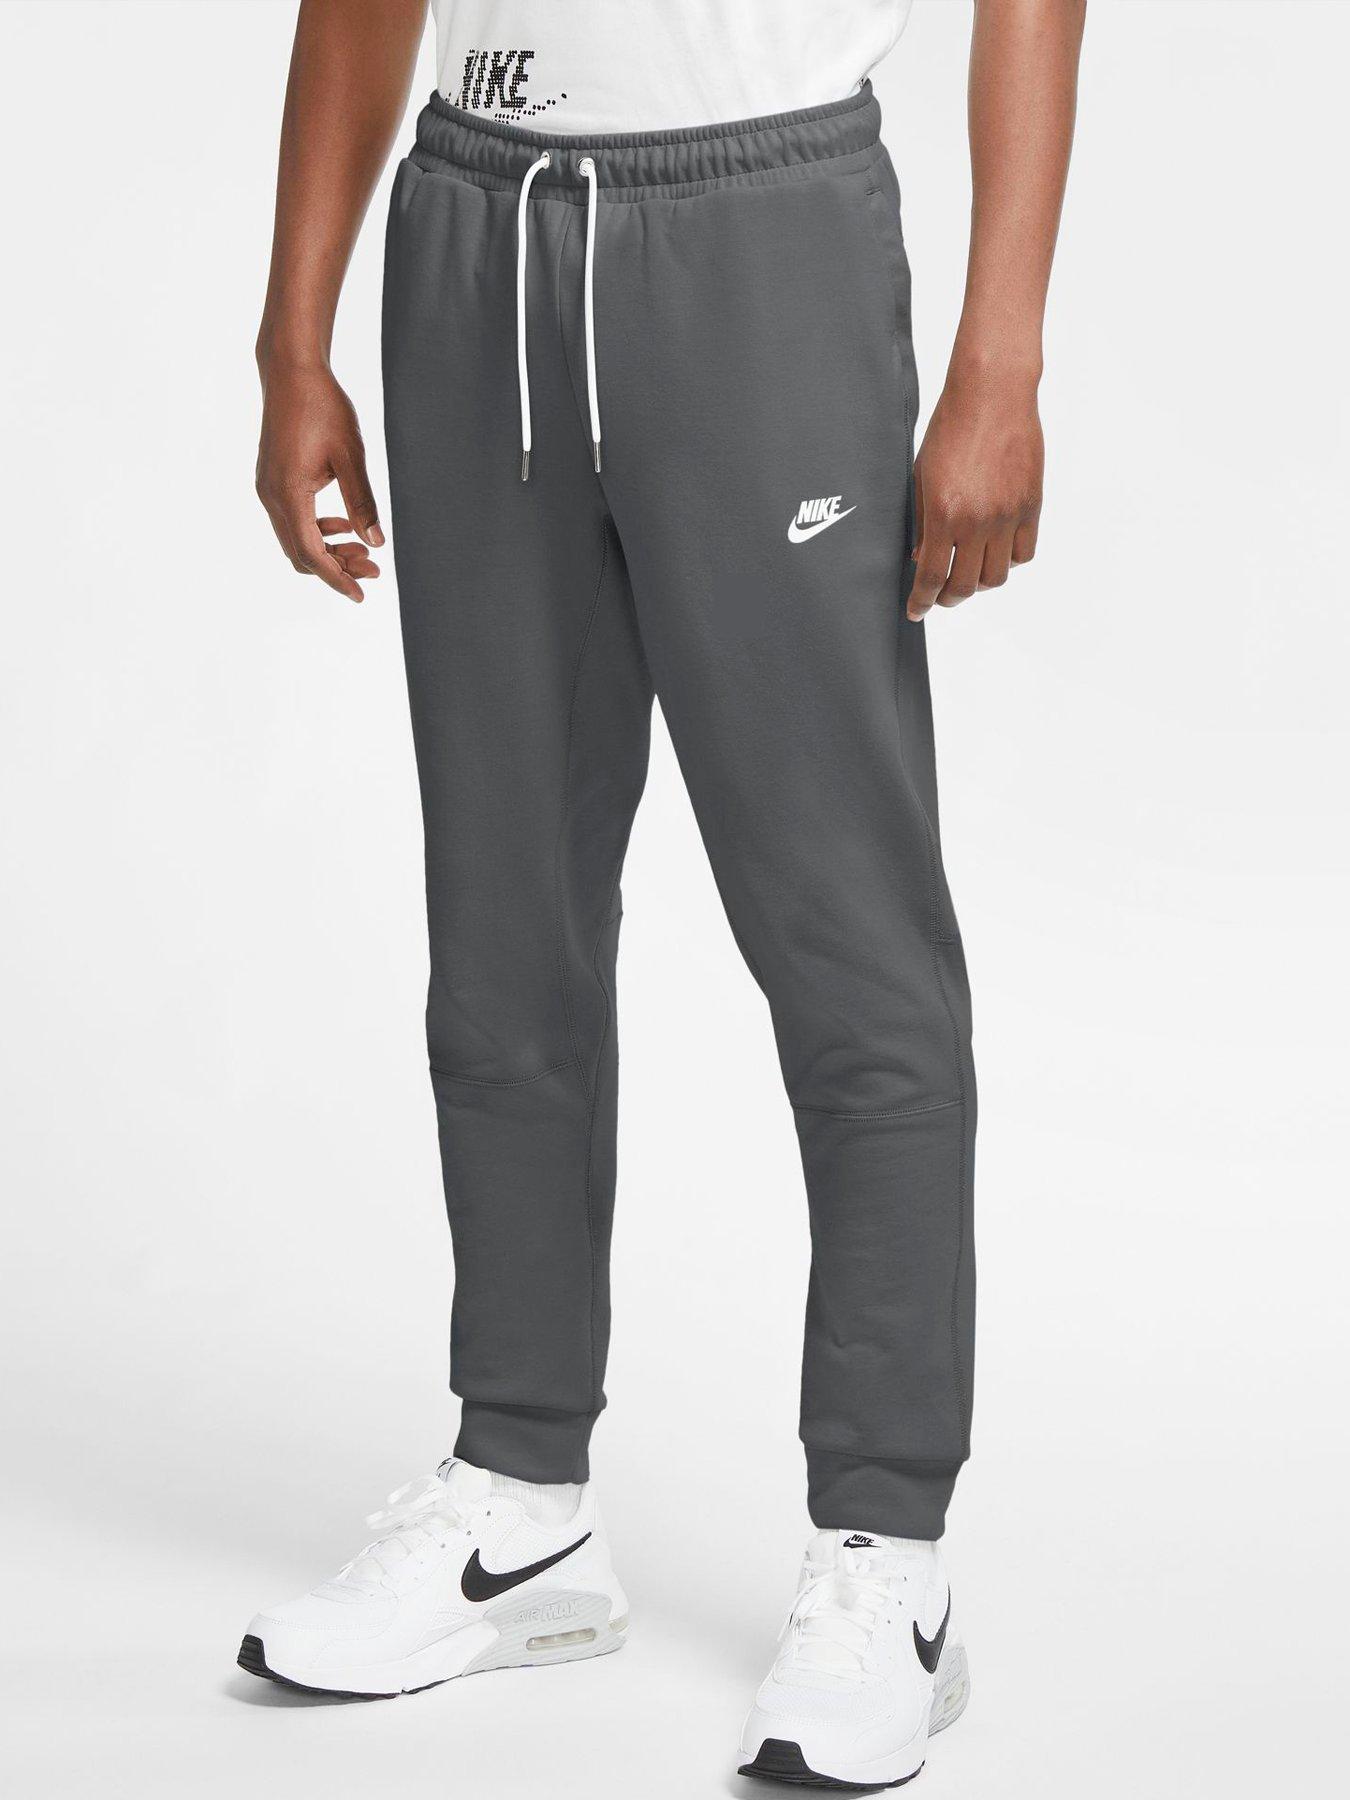 Grey | Jogging bottoms | Sportswear 